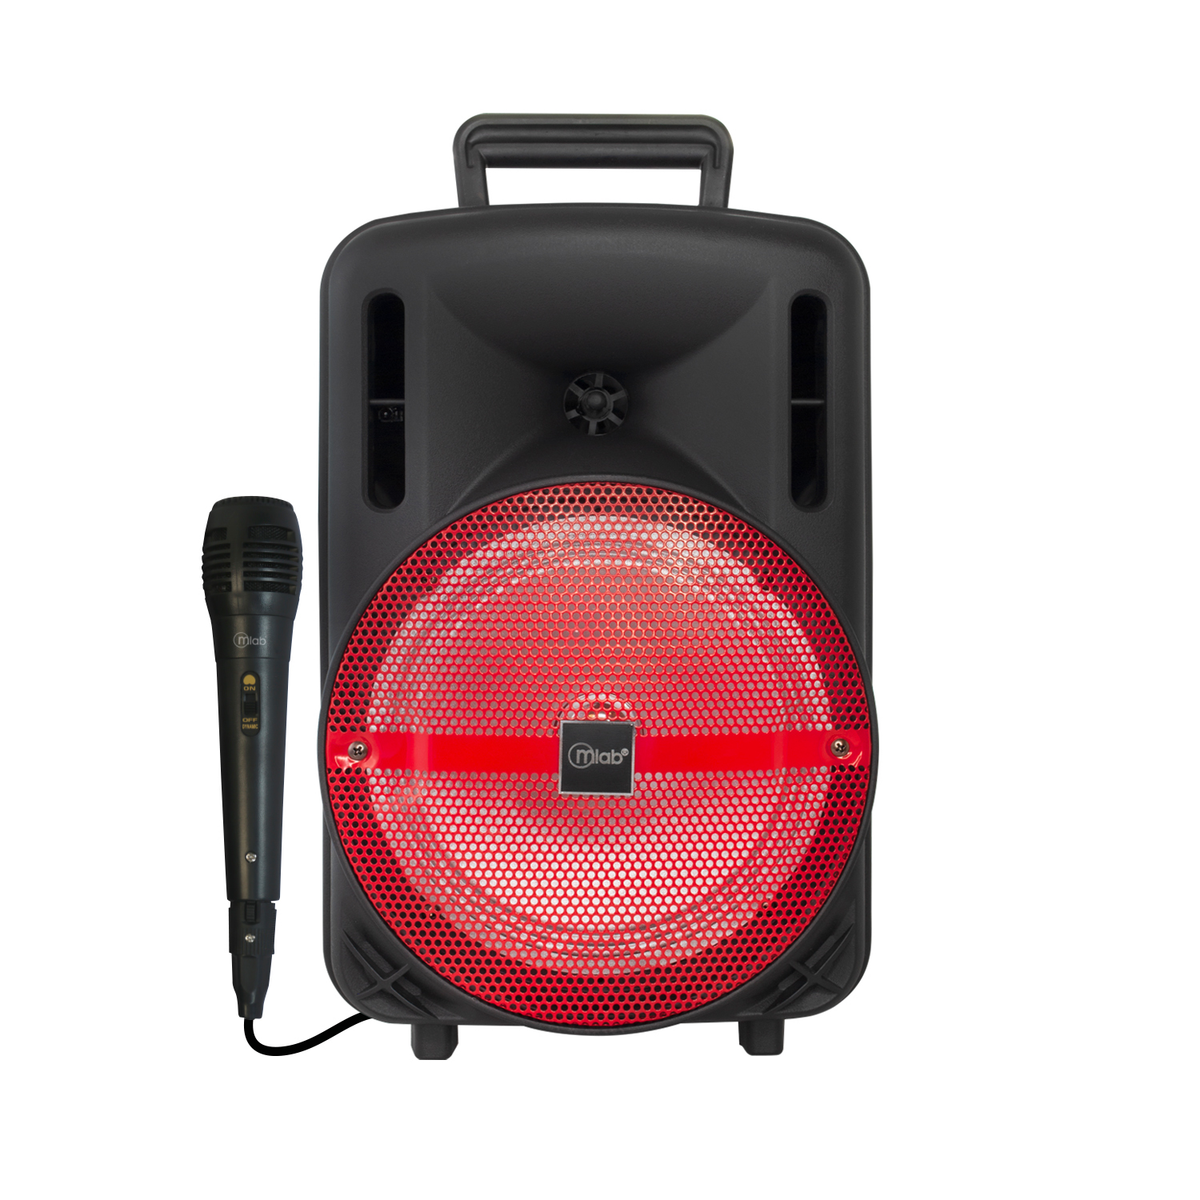 Parlante Bluetooth Street 3 Voice2 Mlab (8706) rojo